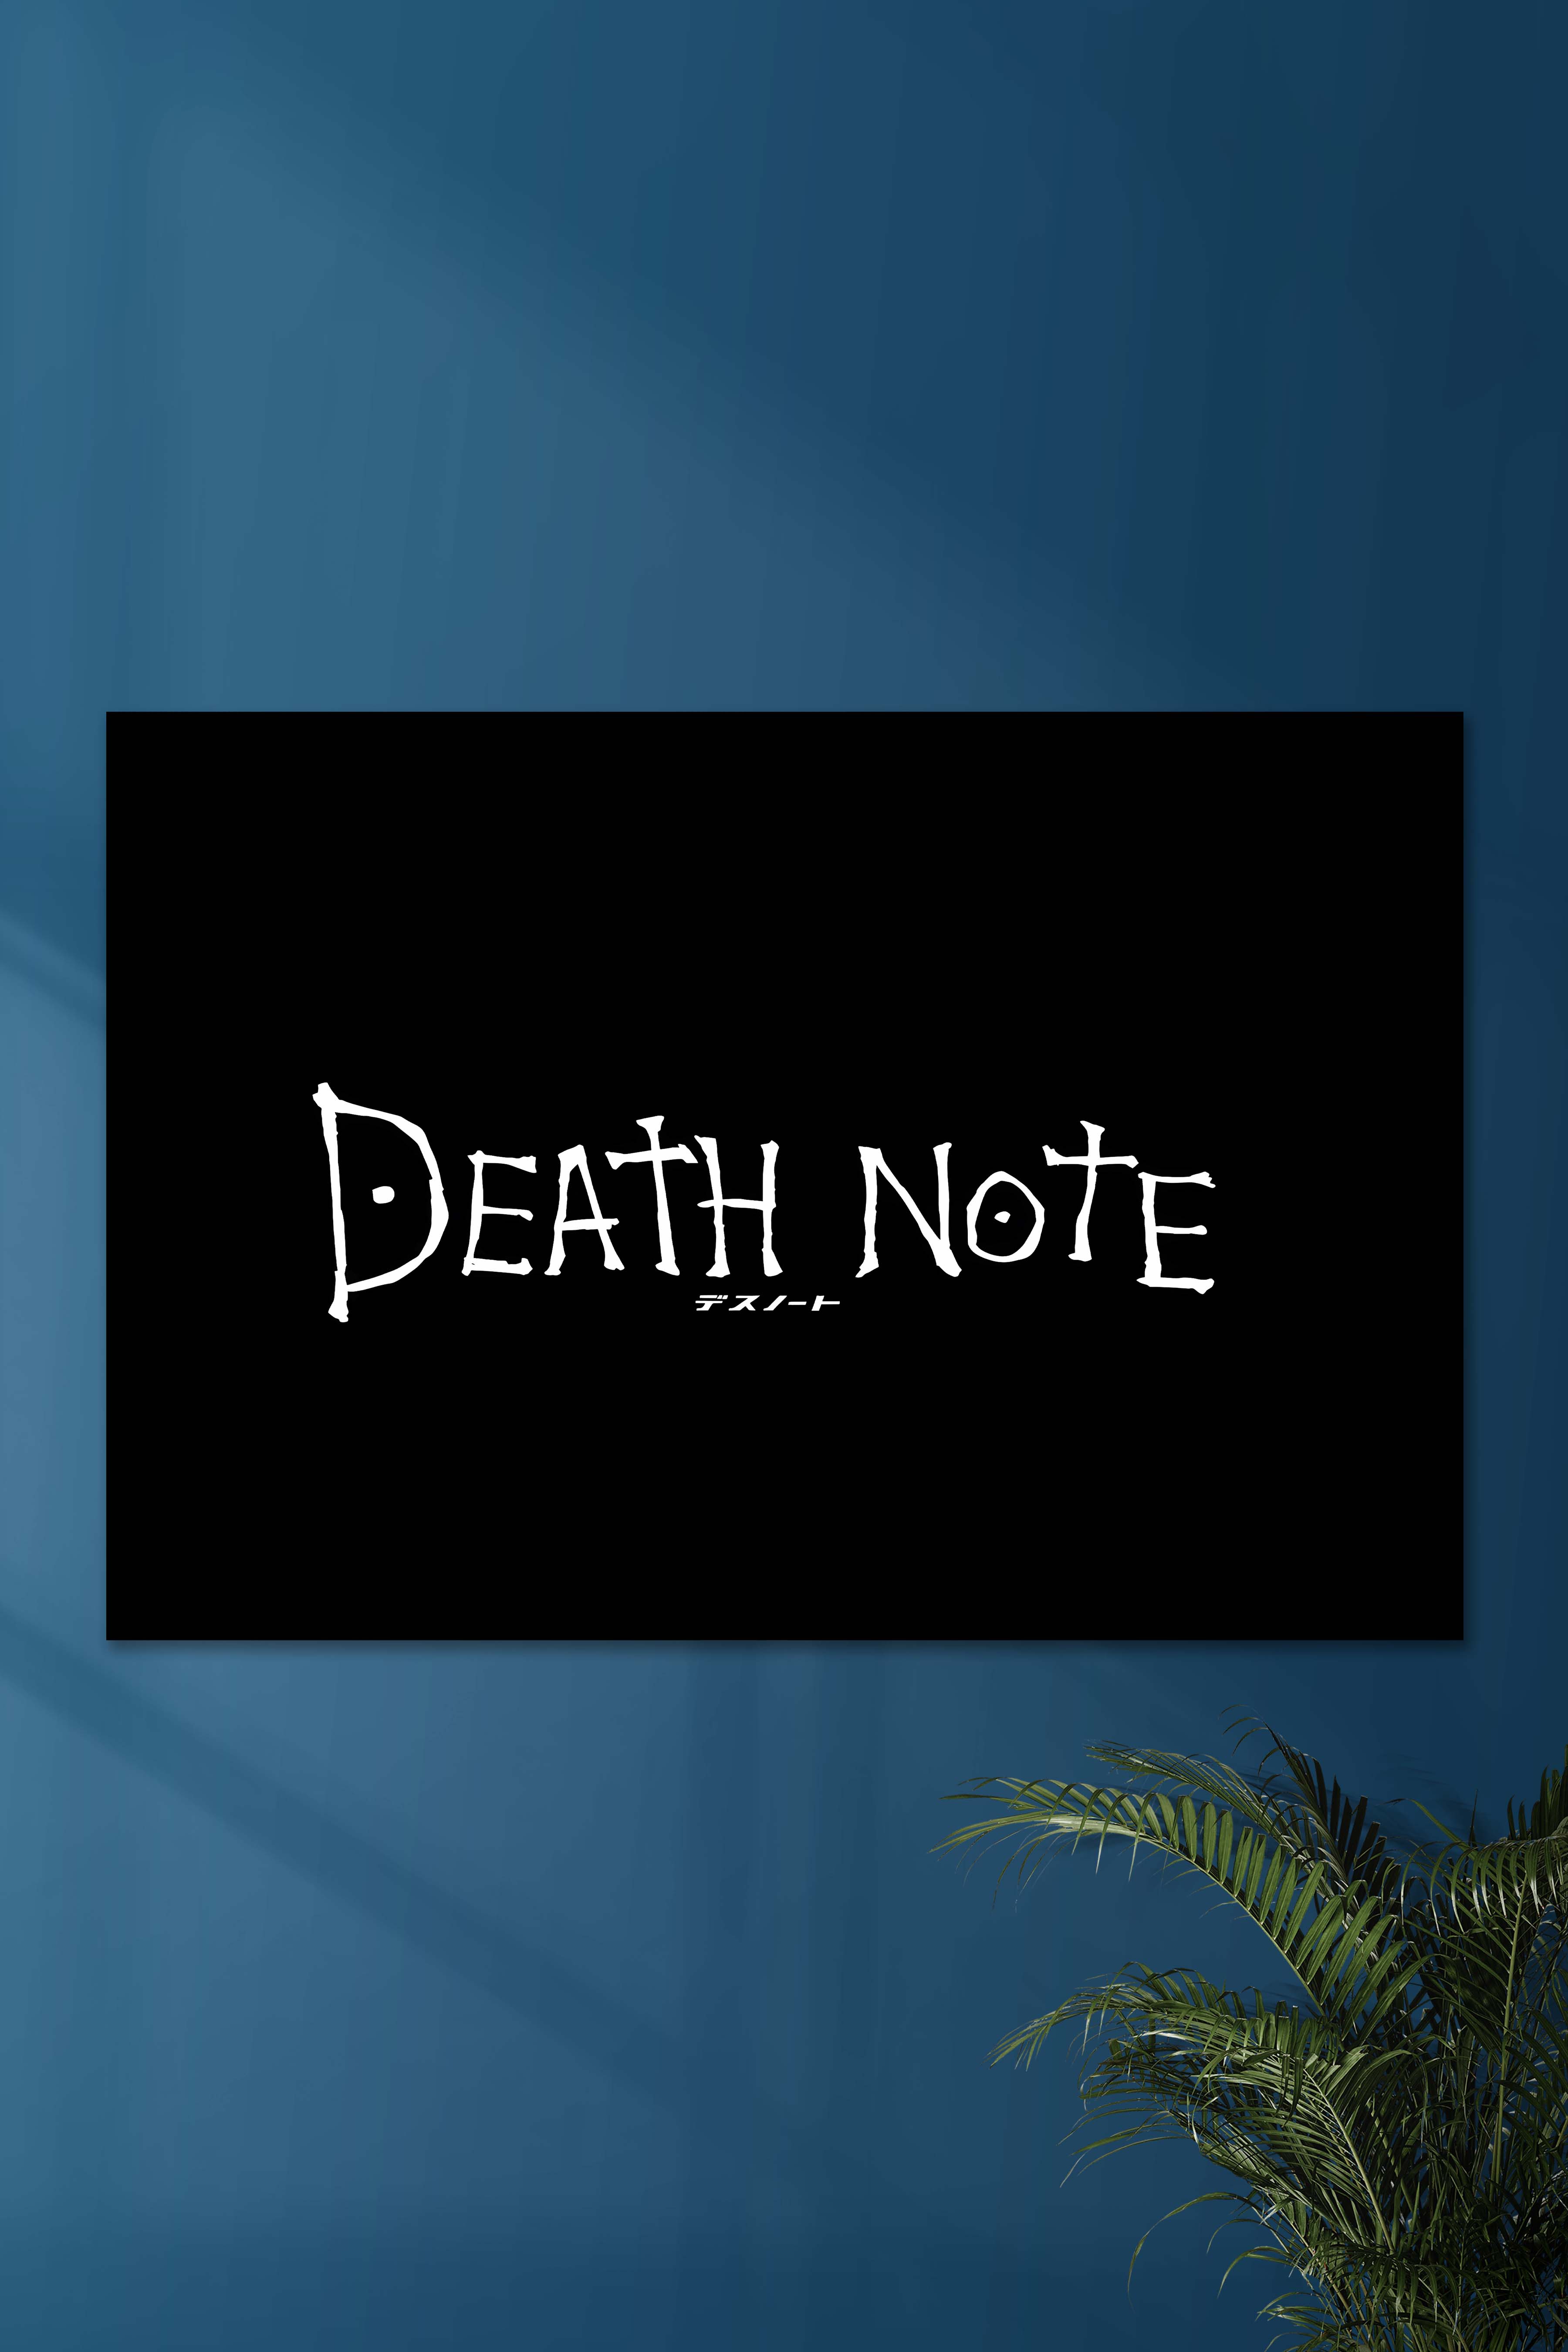 Death Note circle logo by LuisArriola on DeviantArt